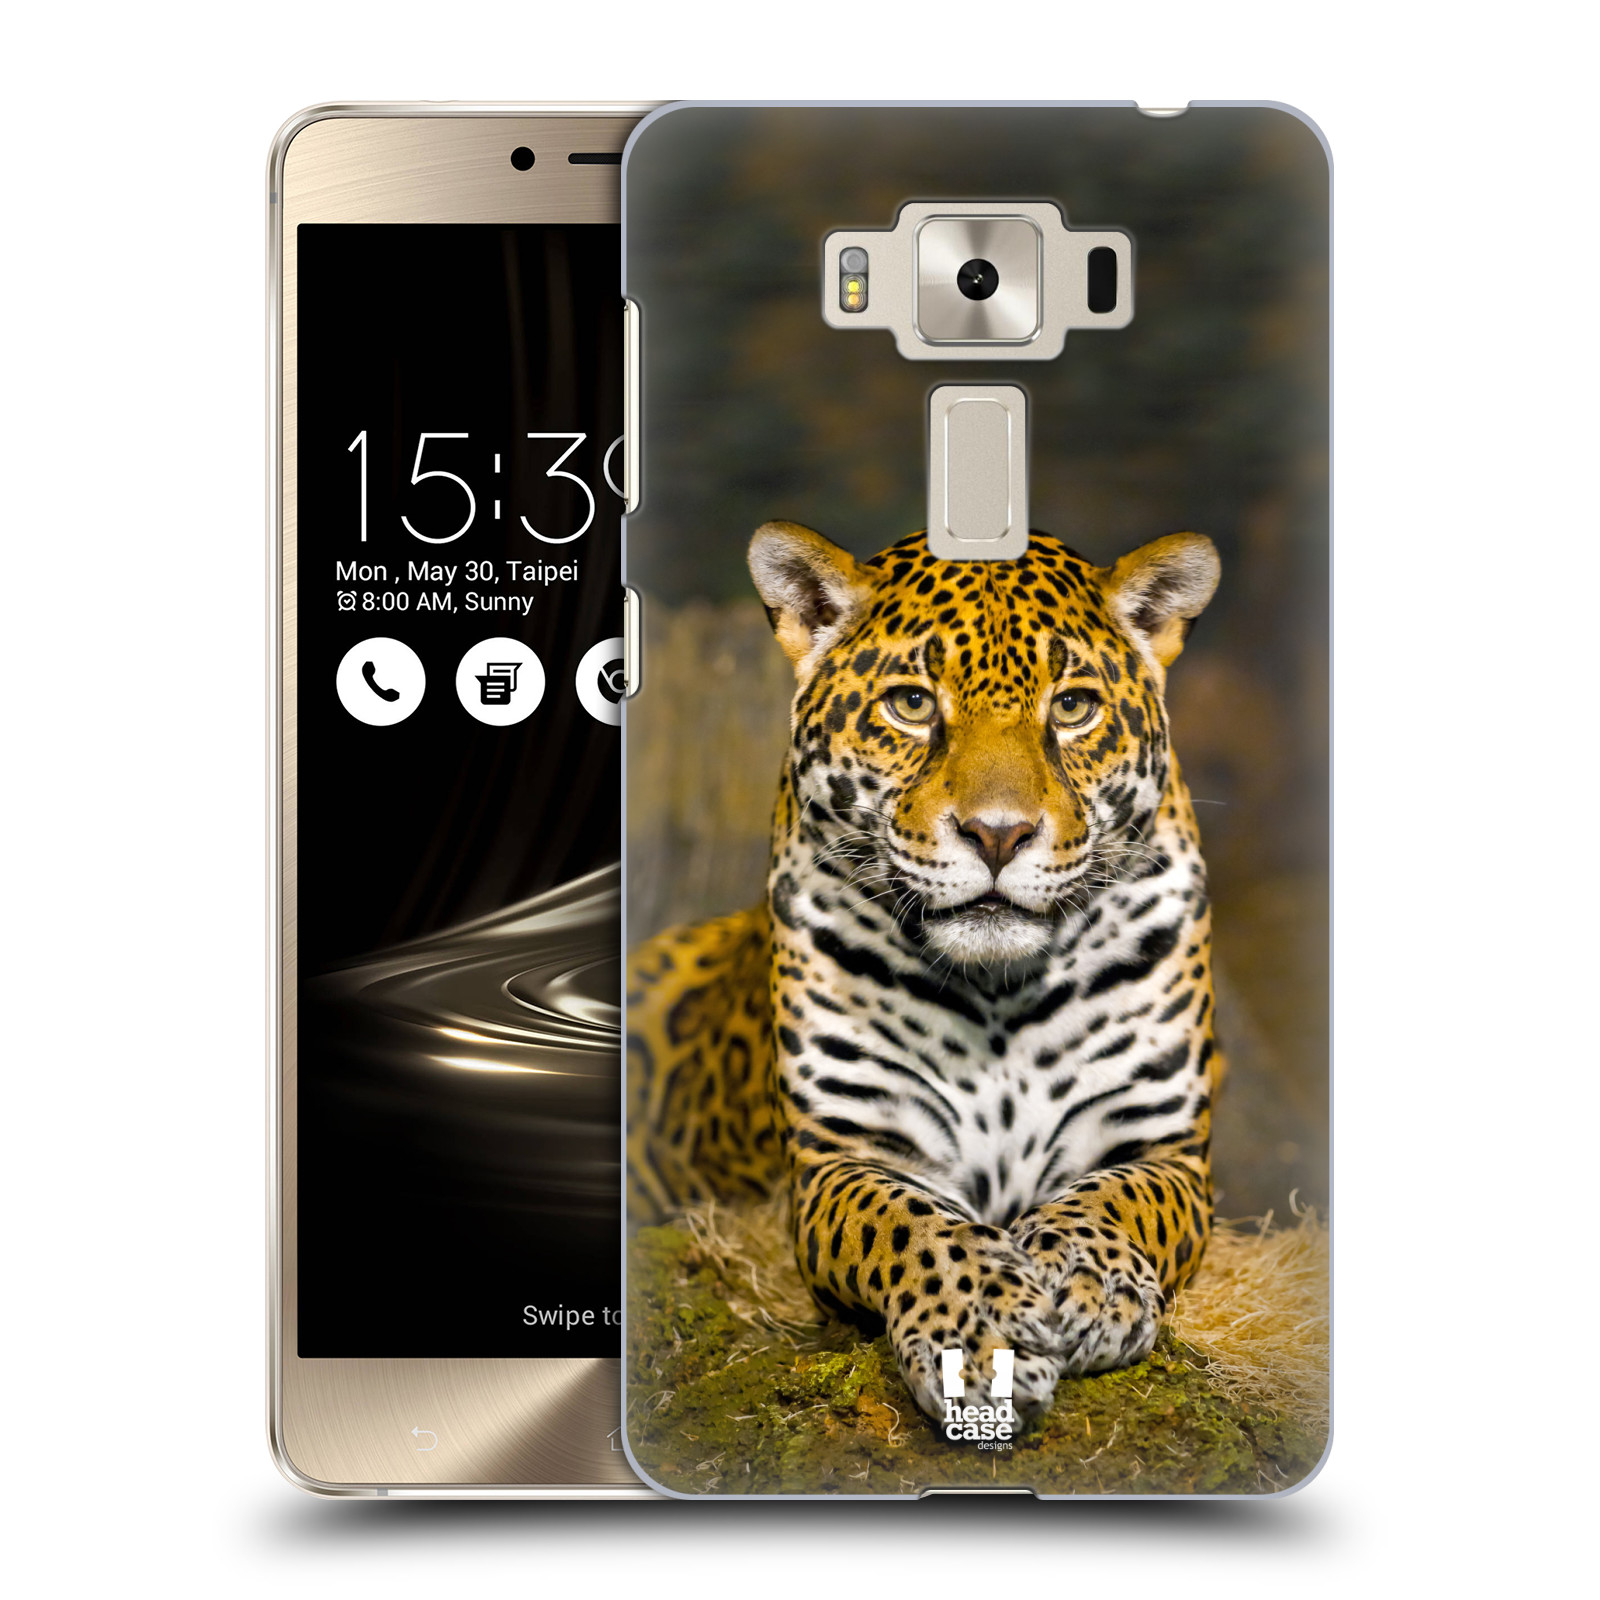 HEAD CASE plastový obal na mobil Asus Zenfone 3 DELUXE ZS550KL vzor slavná zvířata foto jaguár